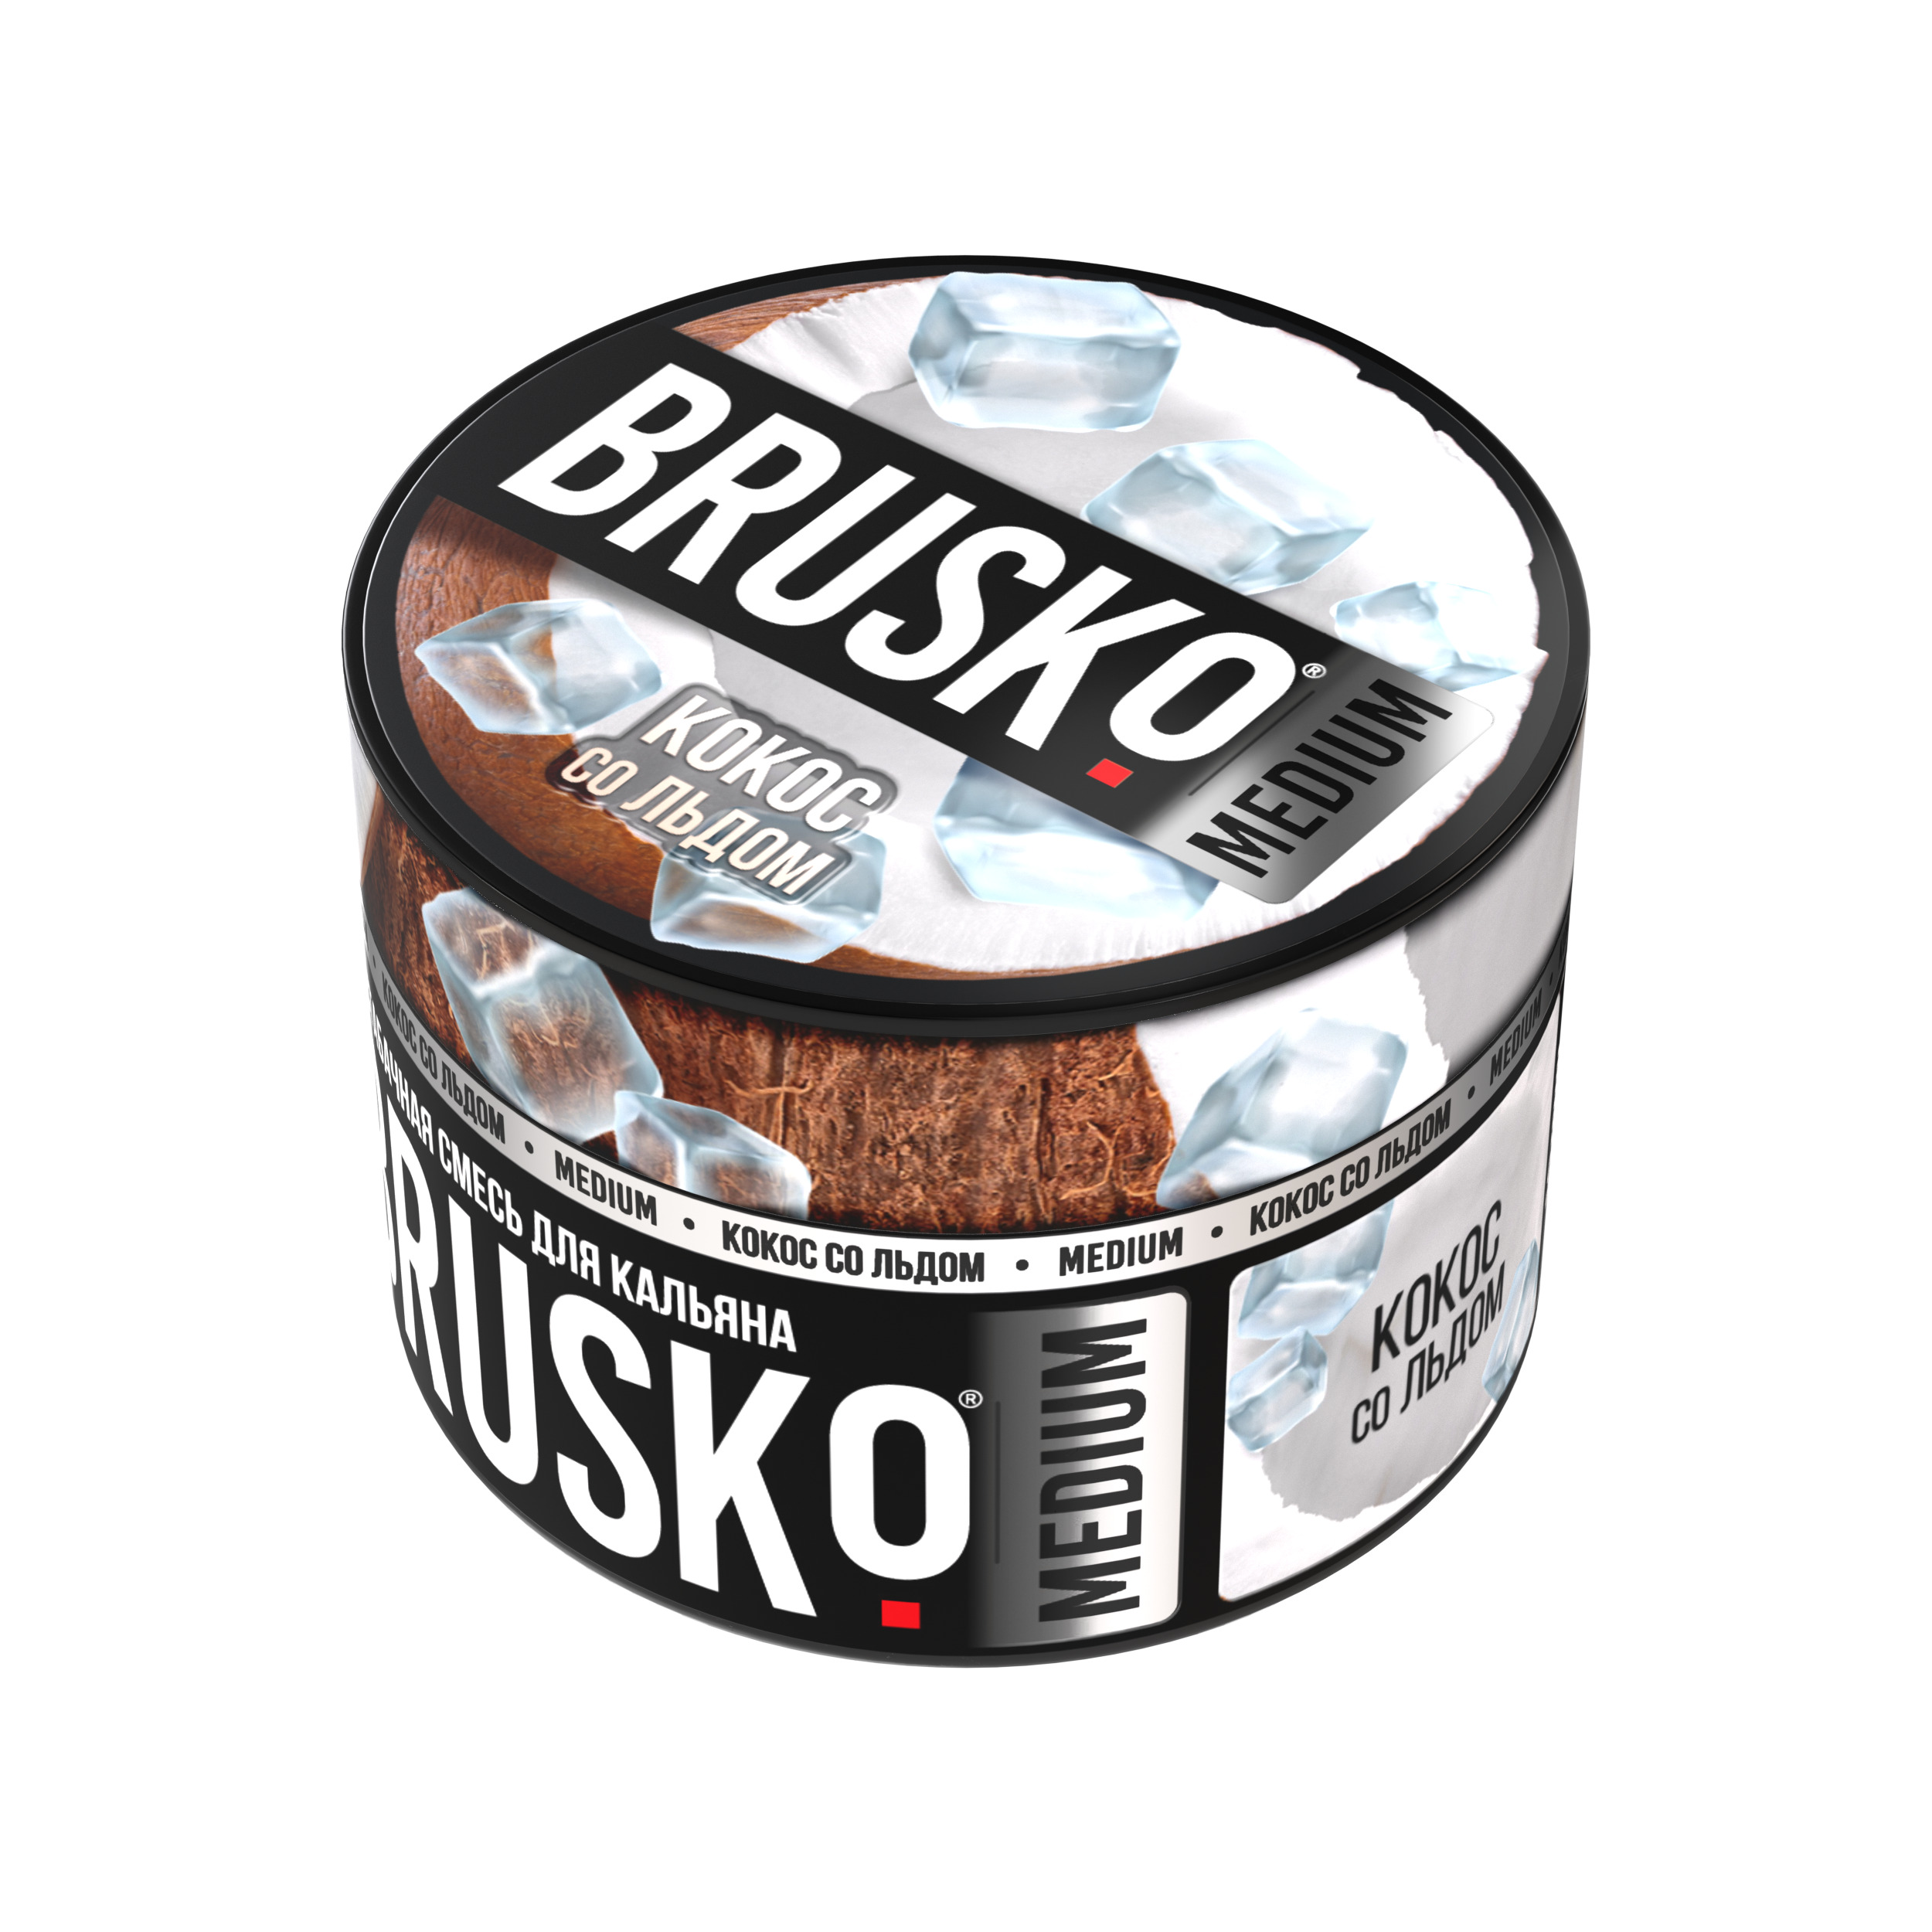 Бестабачная смесь для кальяна BRUSKO, 50 г, Кокос со льдом, Medium (М)